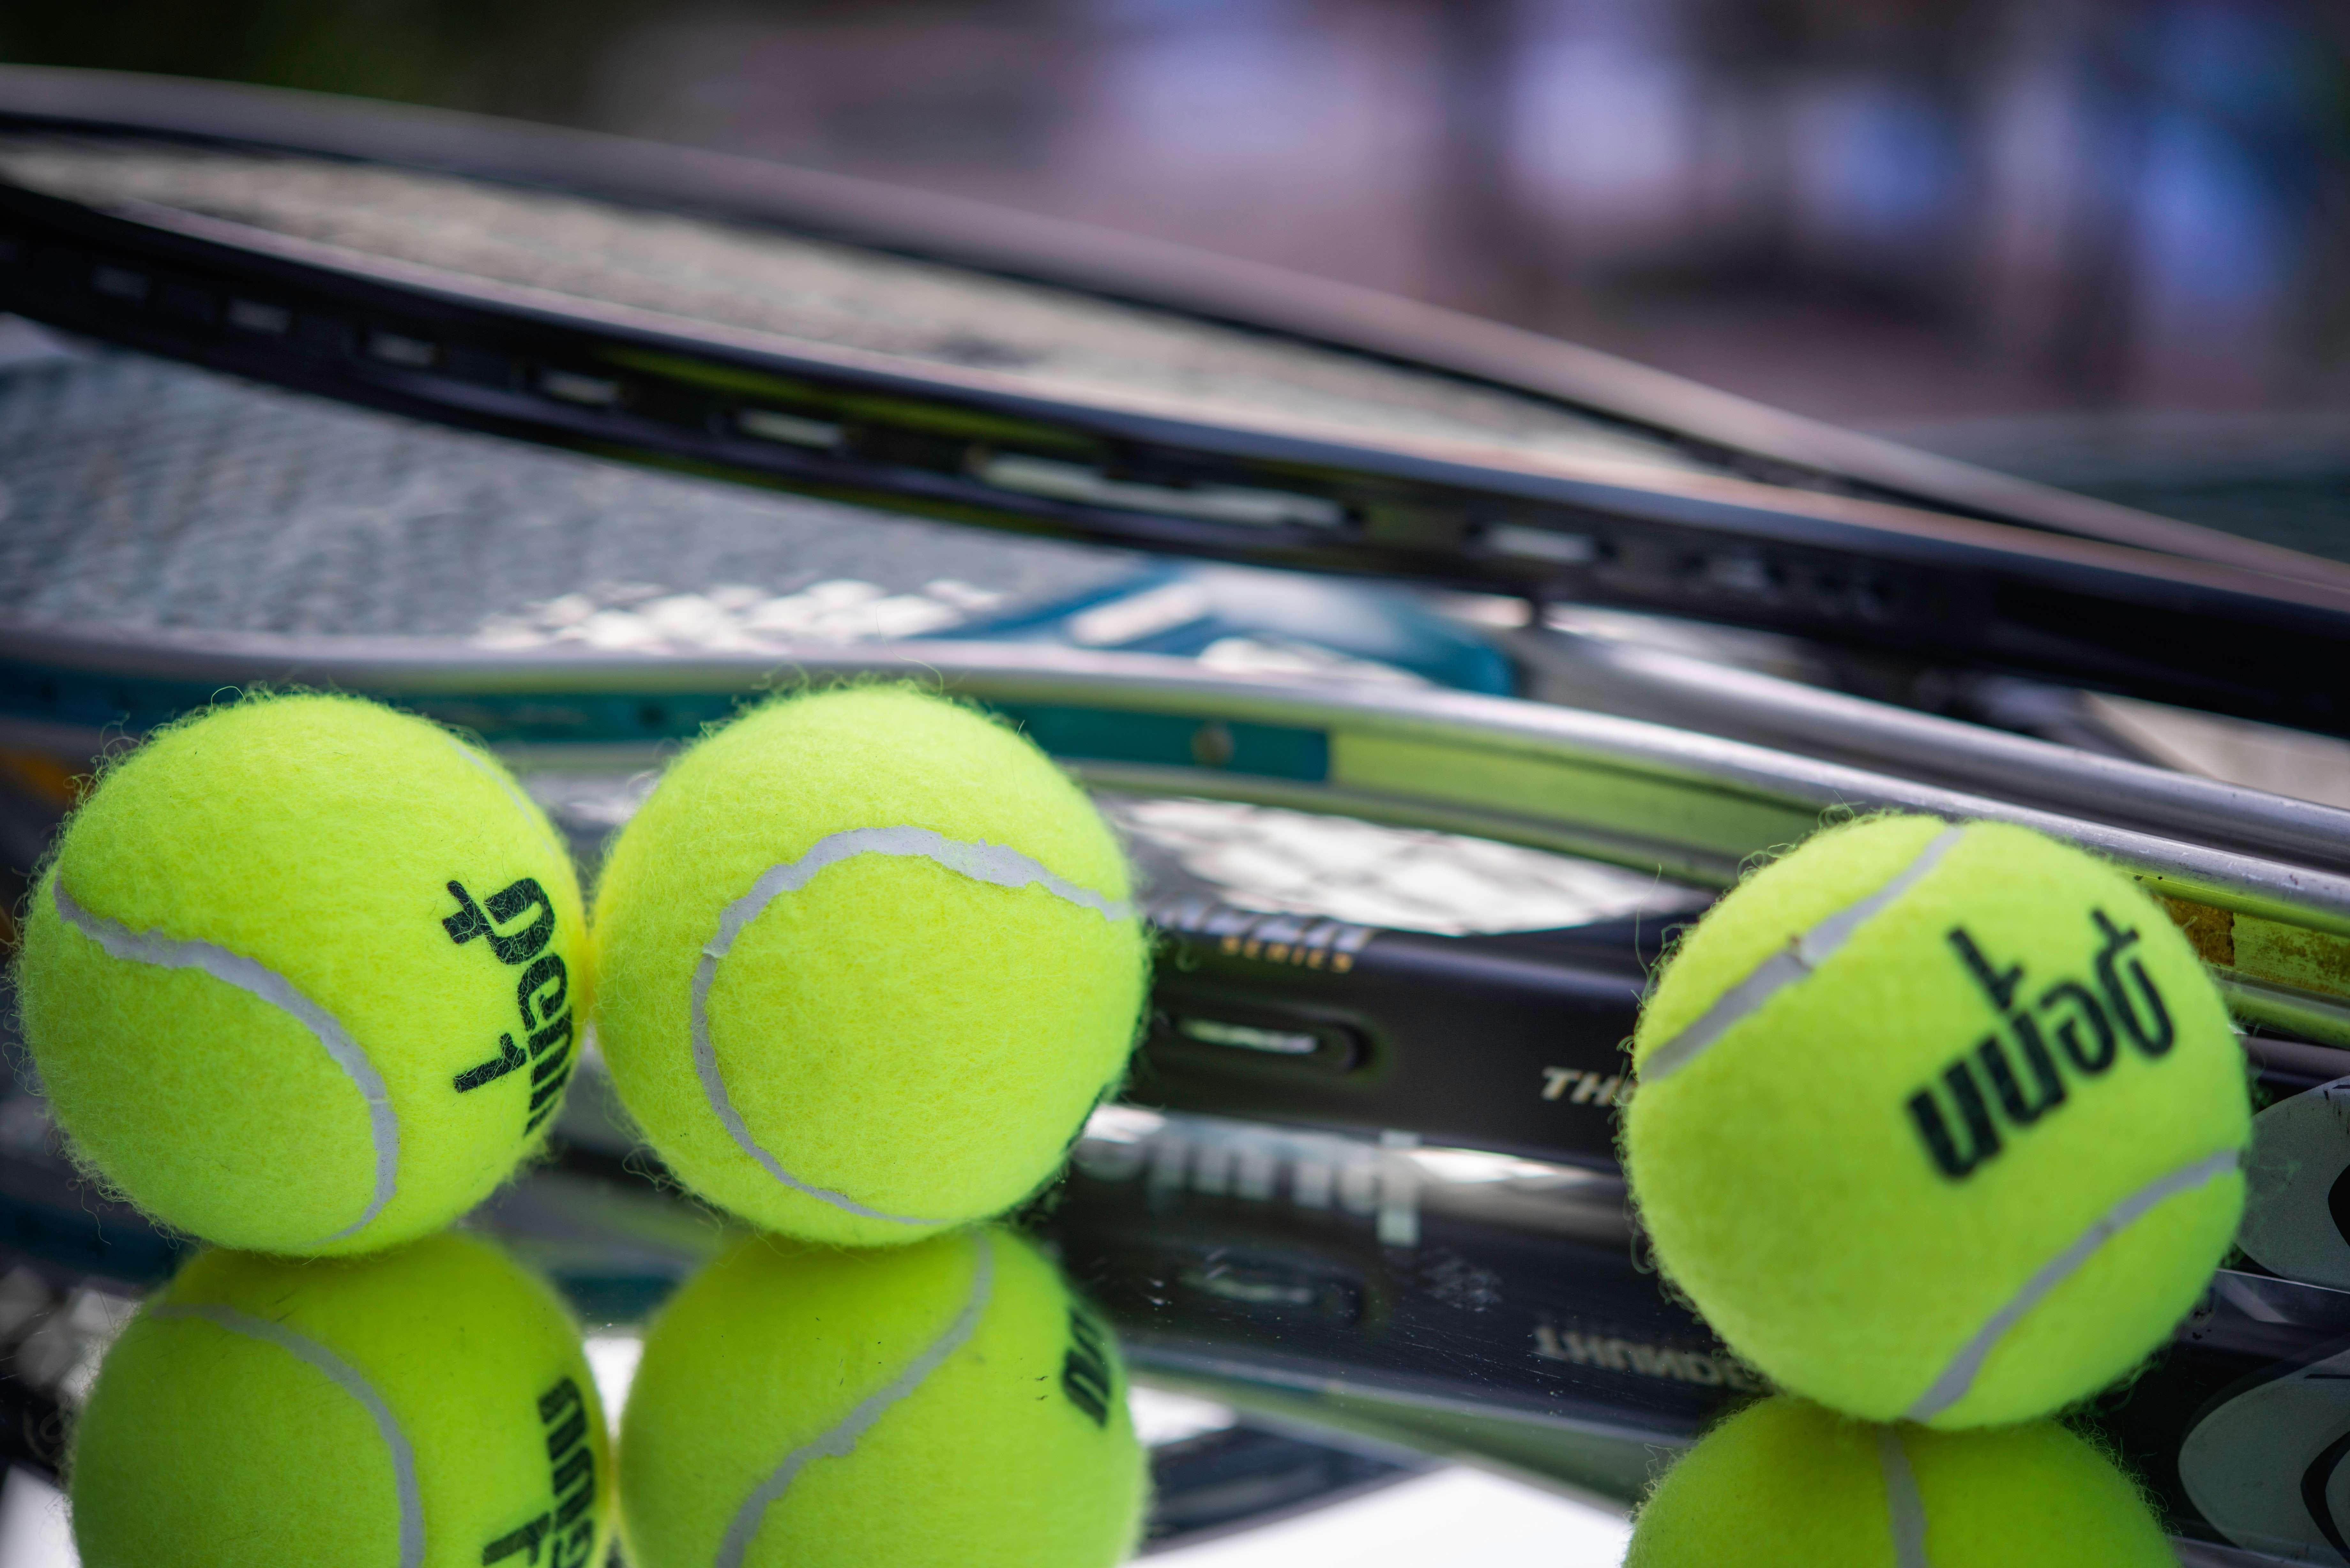 Wimbledon - Tennis rackets